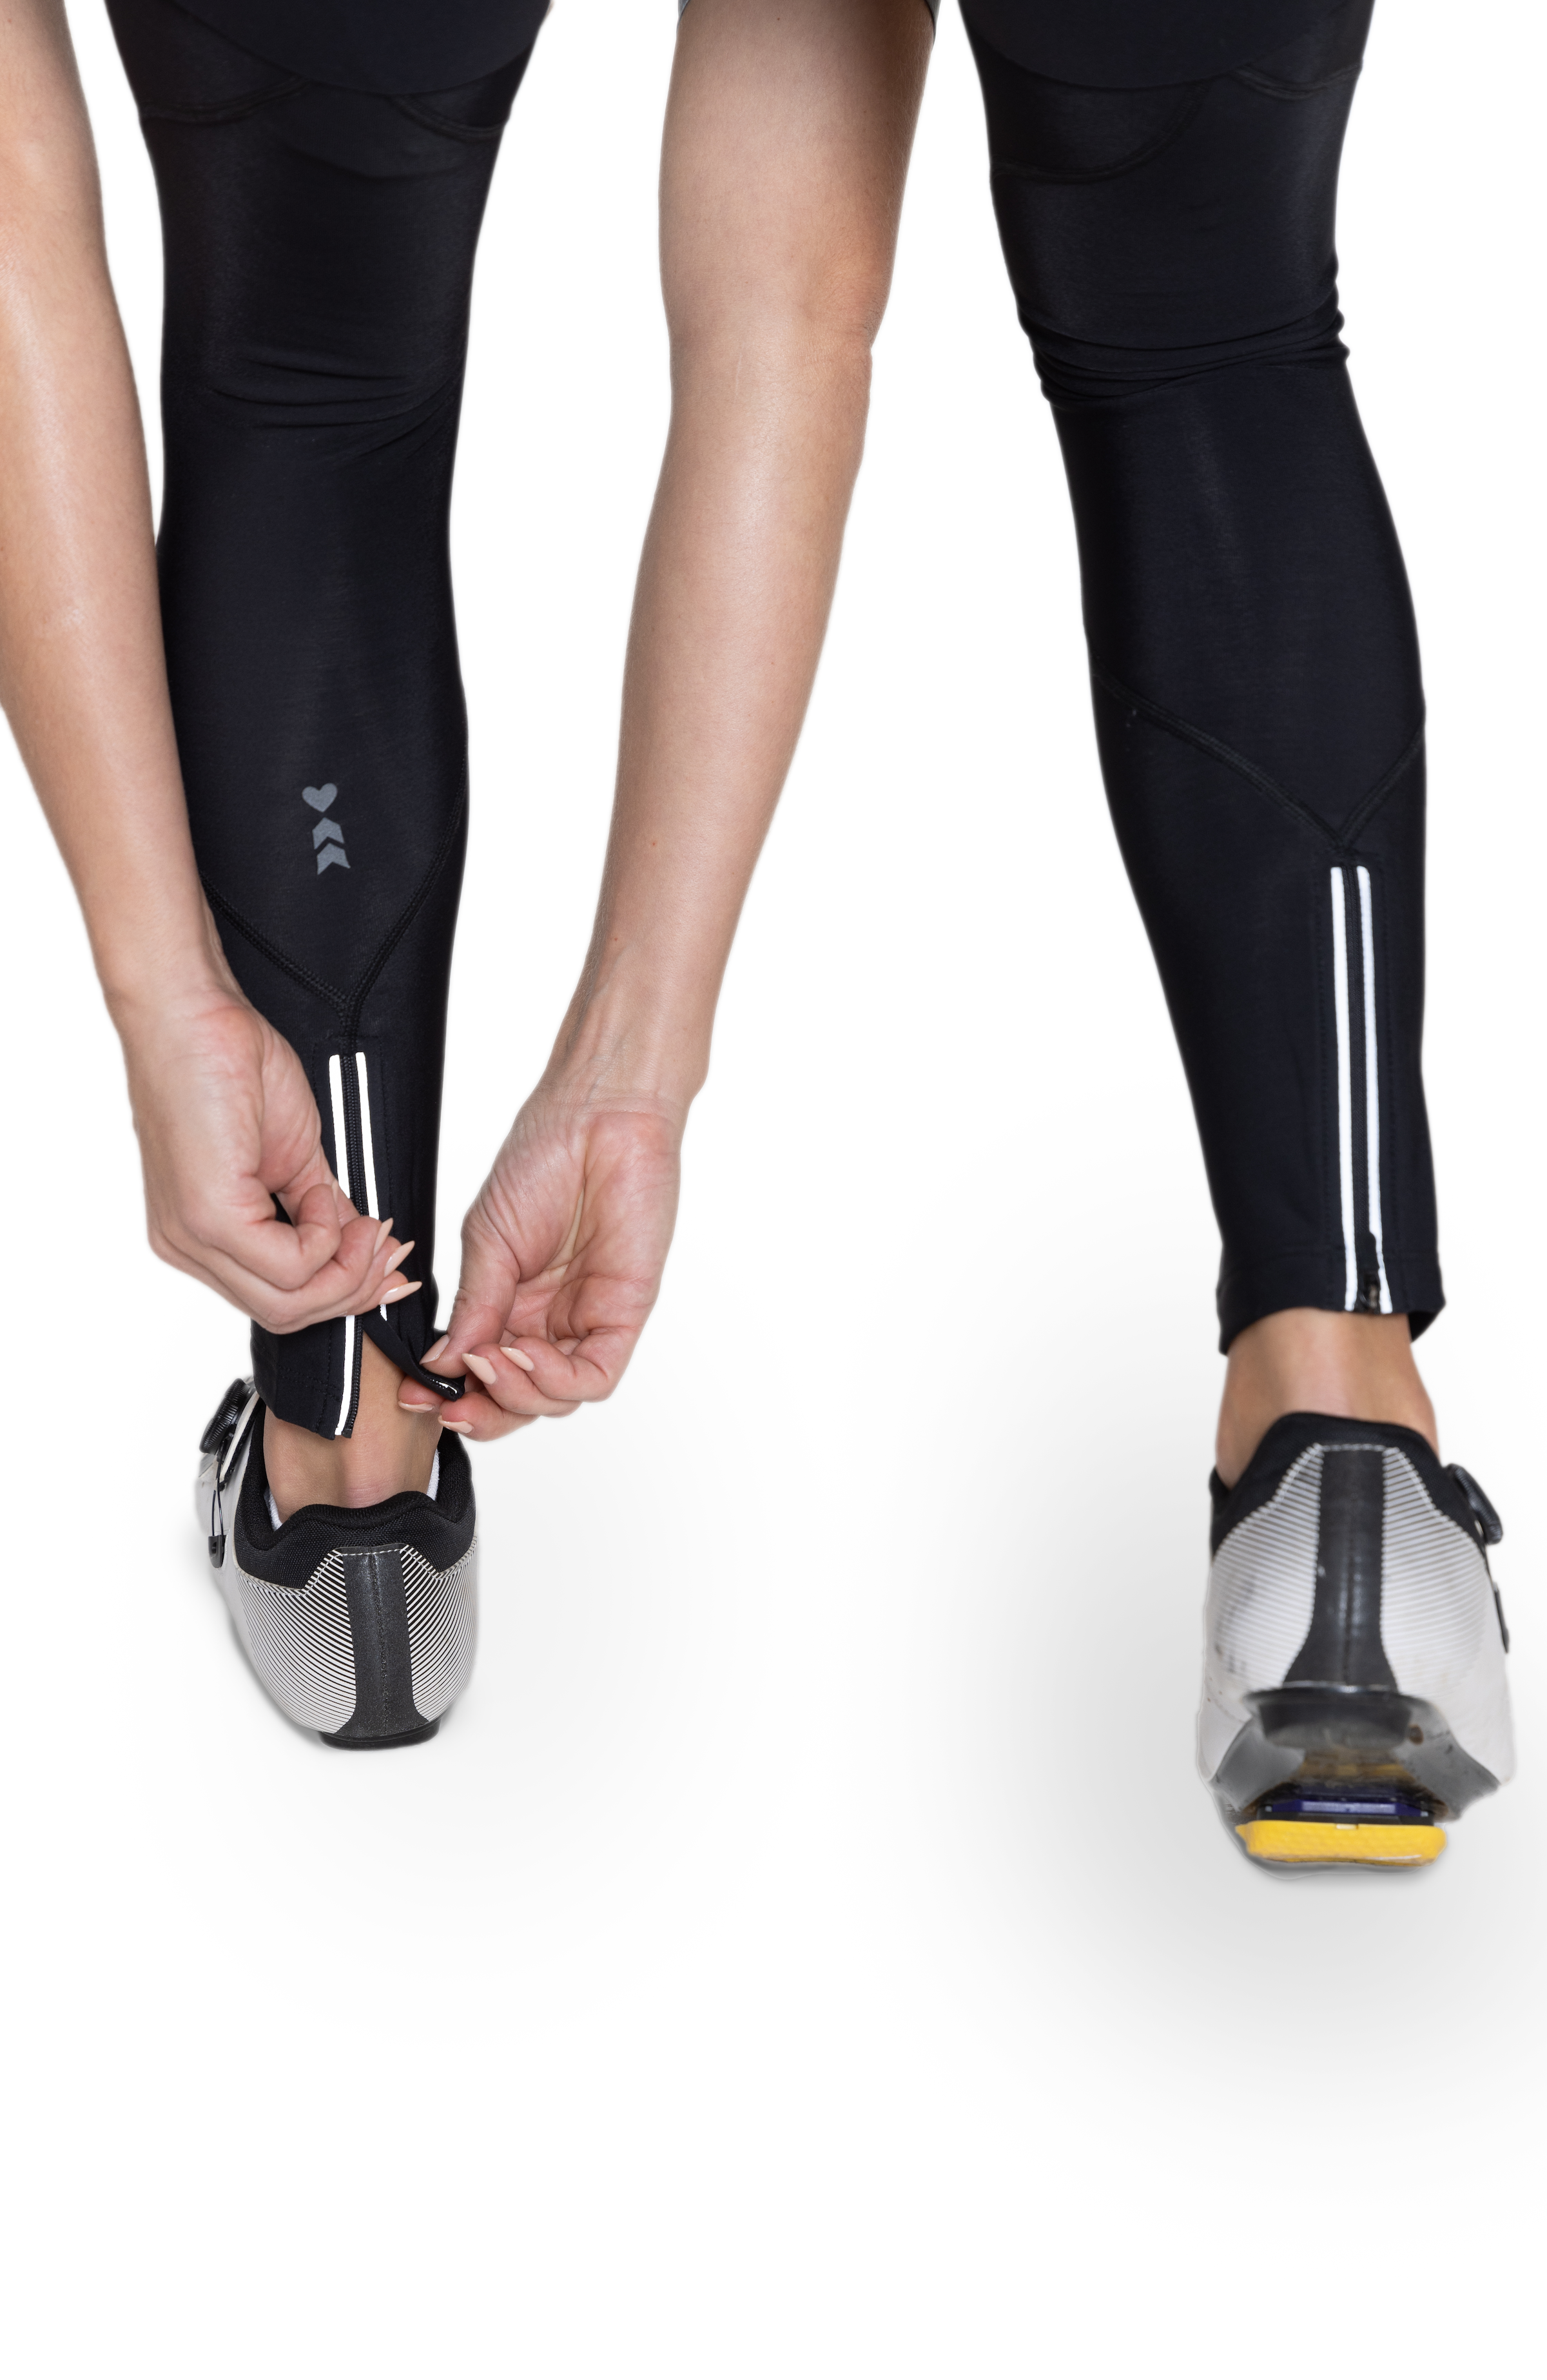 1Pair Winter Thermal Windproof Warm Ankle Warmers Ladies Short Leg Warmers  UK